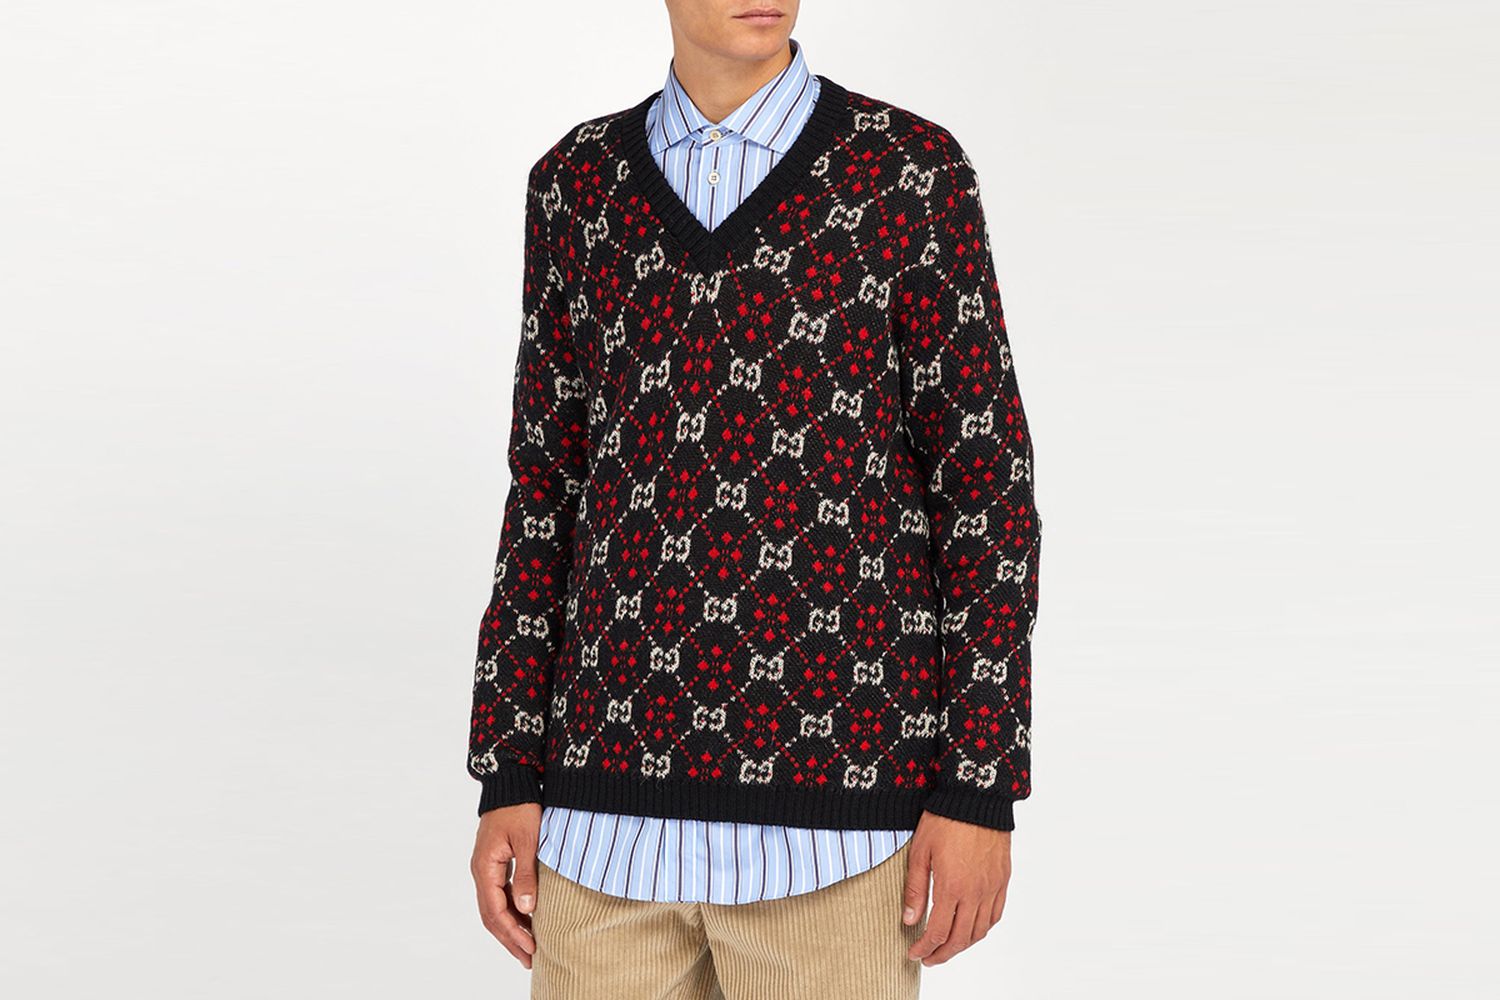 GG Knit Sweater